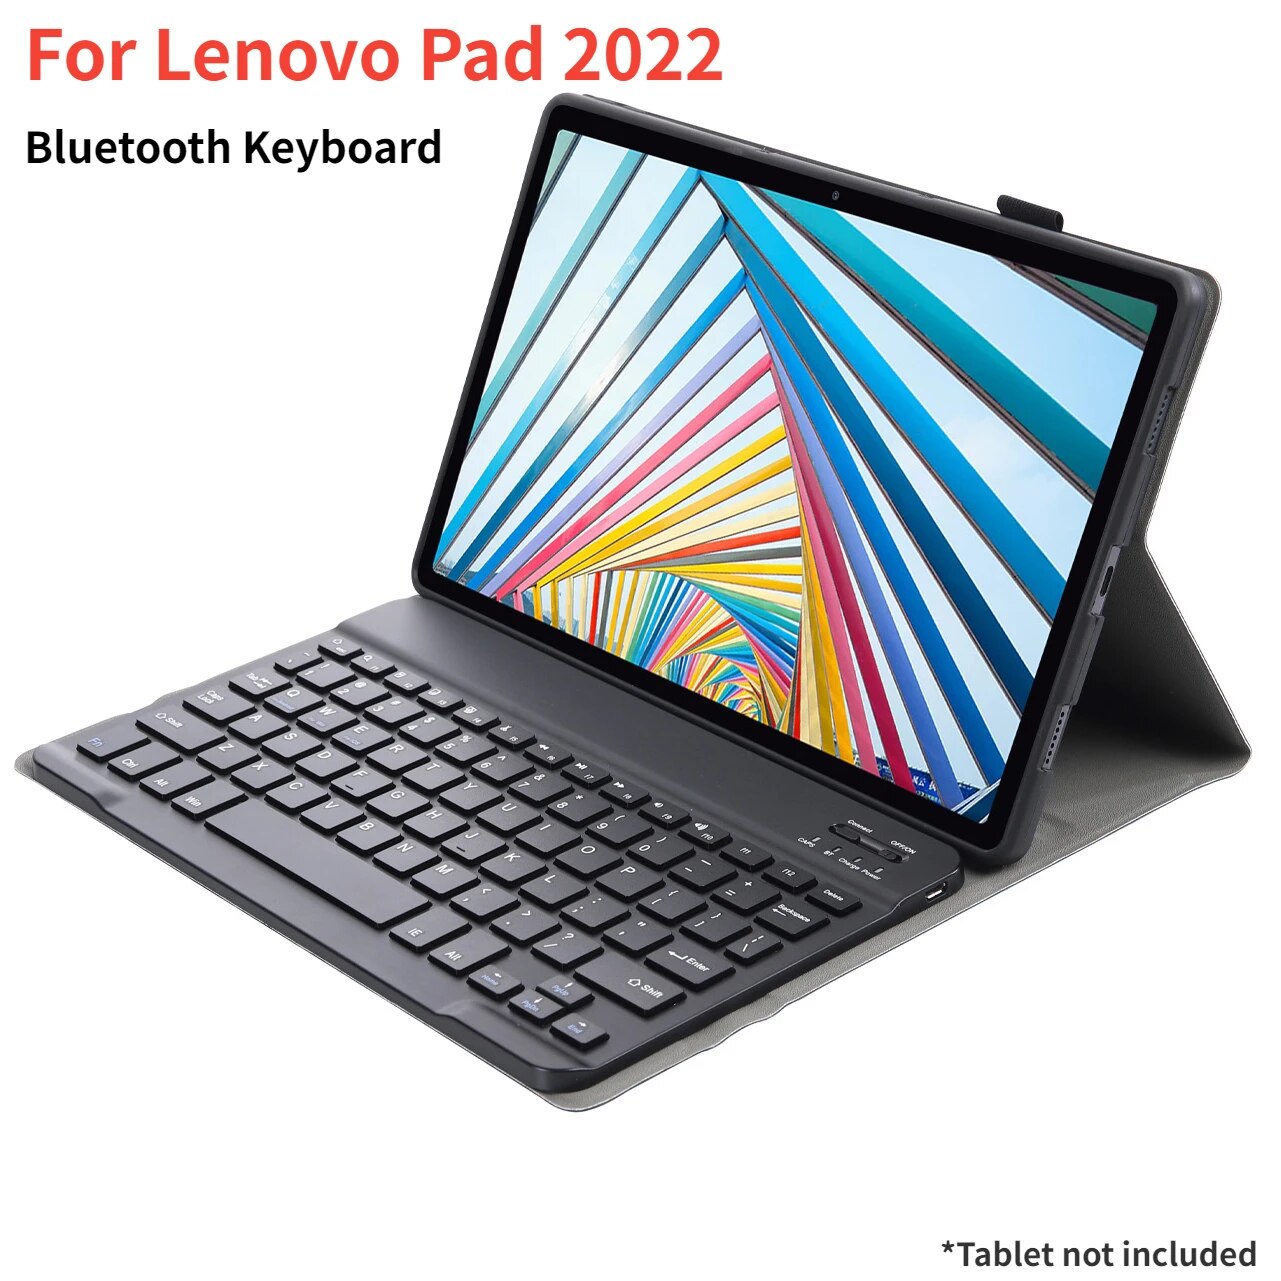 Bàn phím bluetooth cho máy tính bảng Lenovo xiaoxin Pad 2022 màu xám với Ốp bảo vệ cho Lenovo M10 cộng với thứ 3